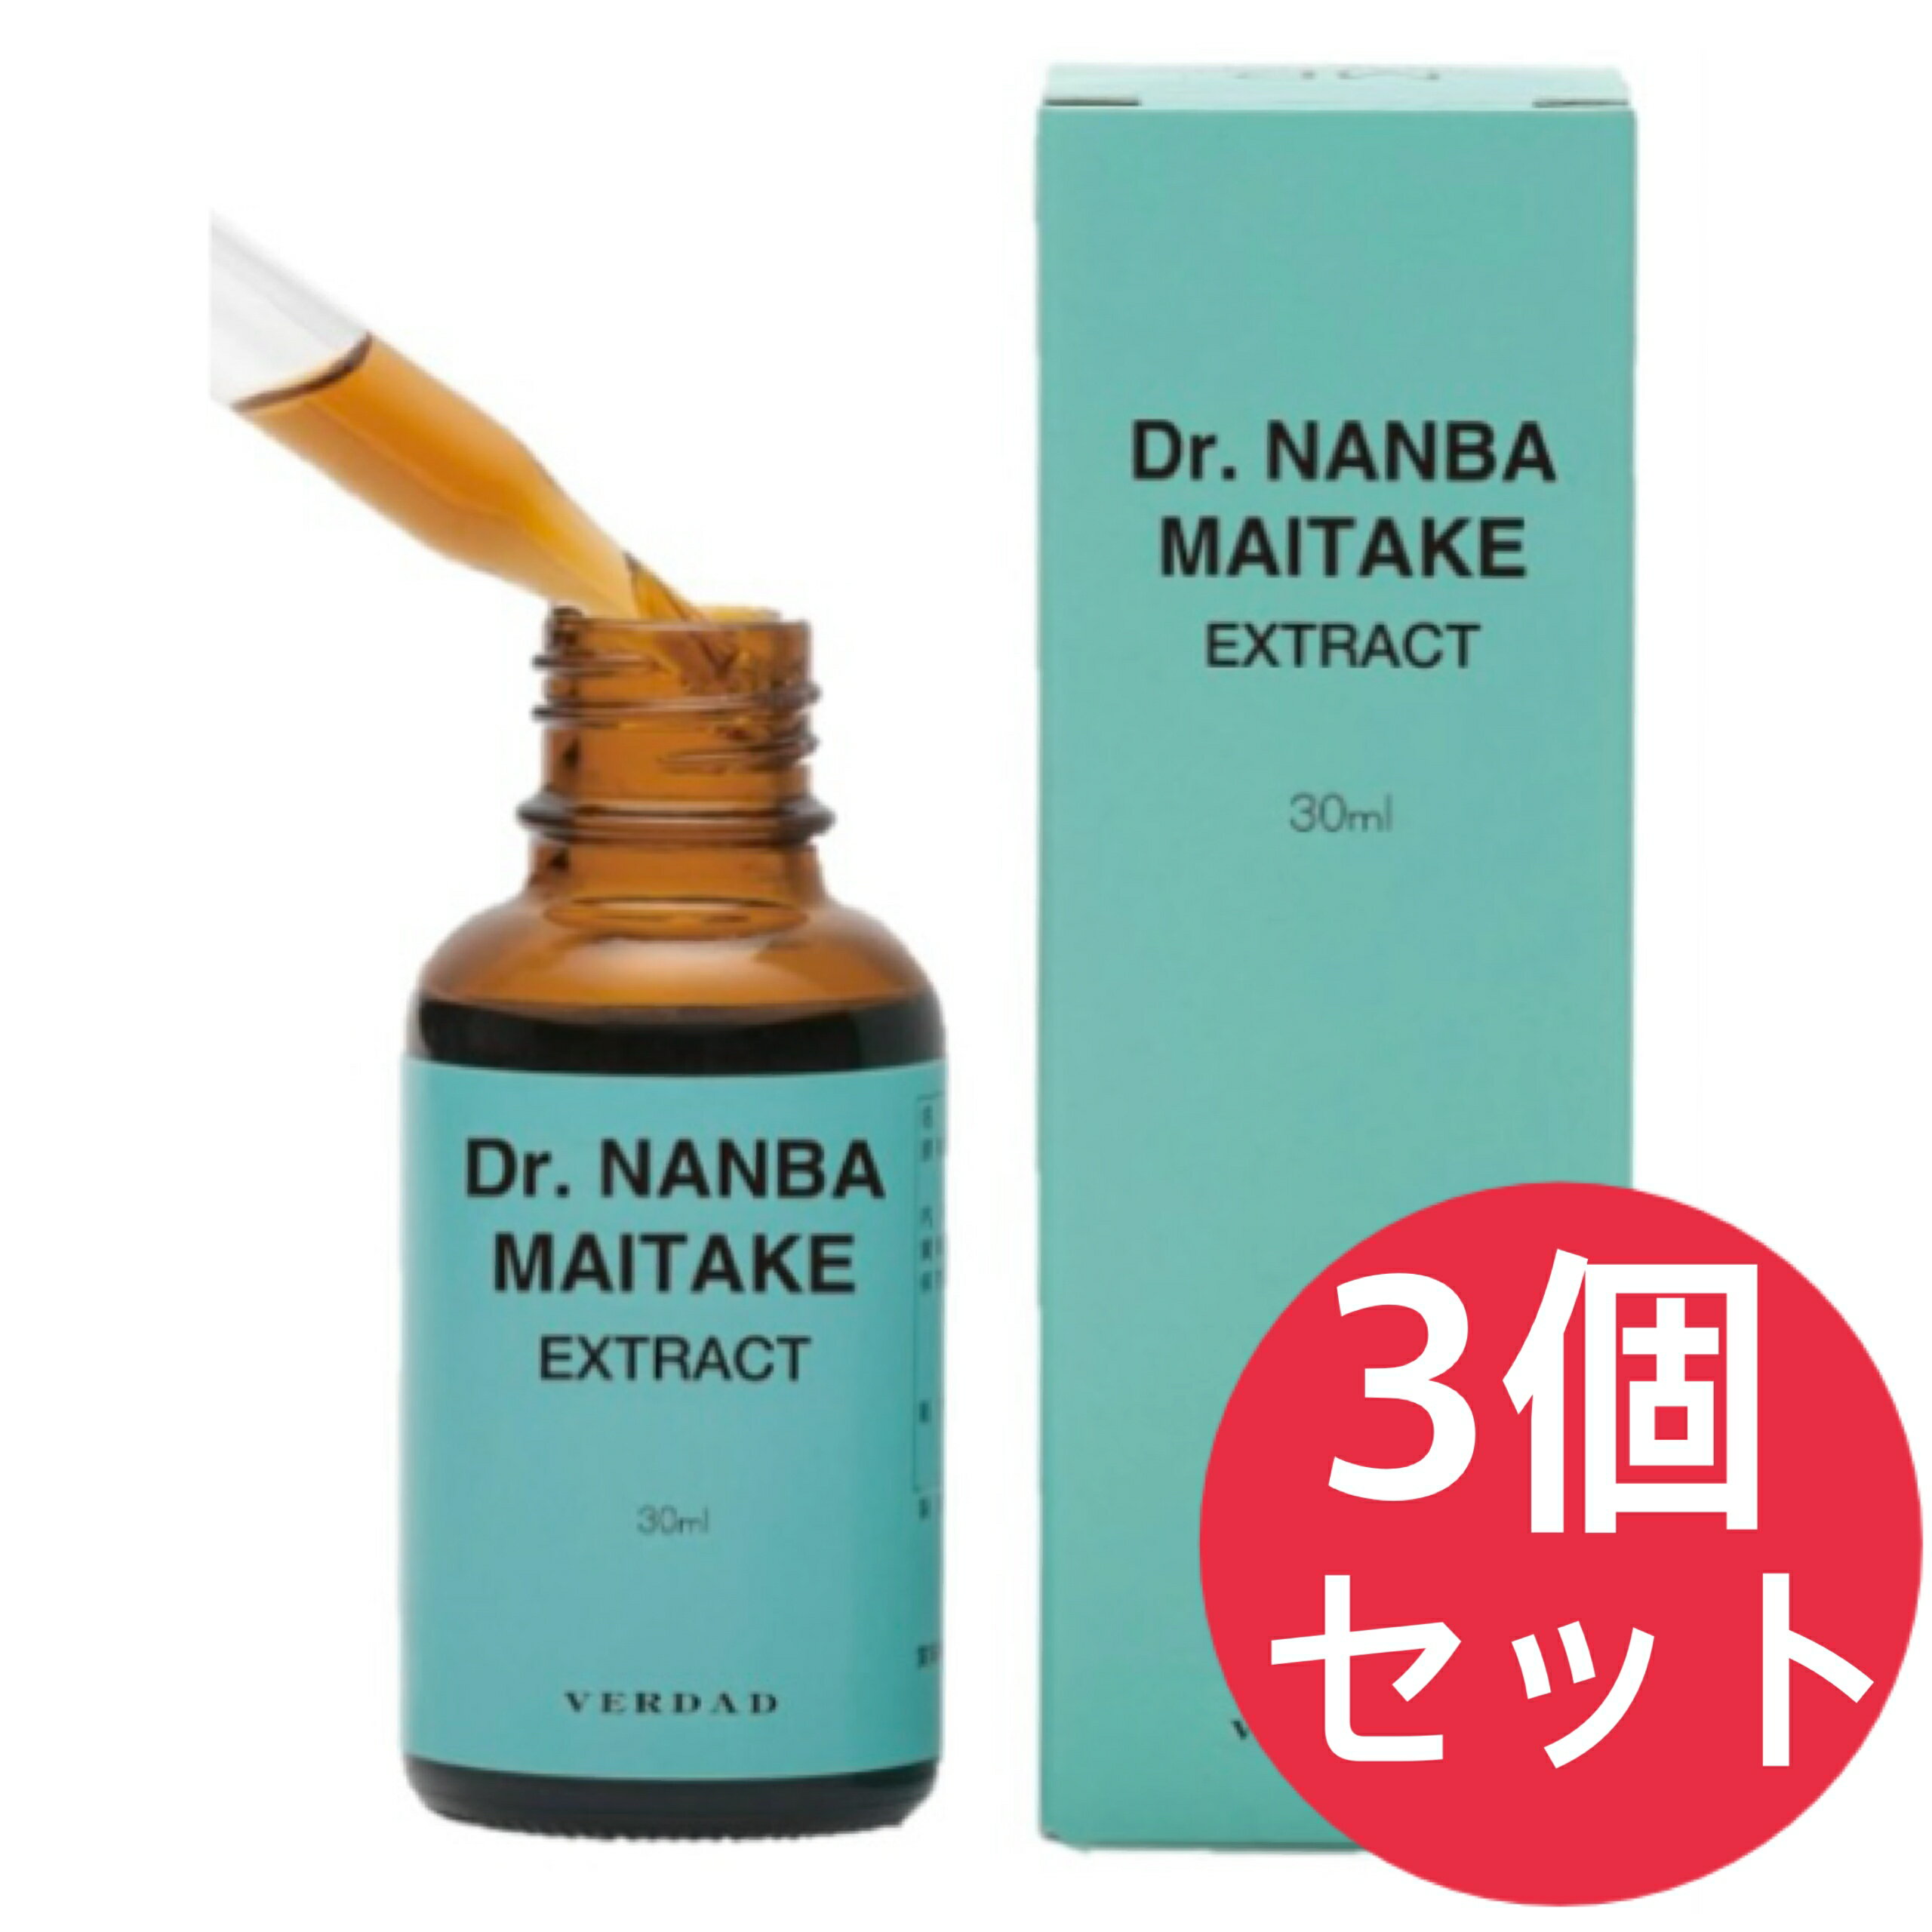 ドクターナンバ マイタケ エキス 30ml 液状 MDフラクション Dr.NANBA MAITAKE 3個セット